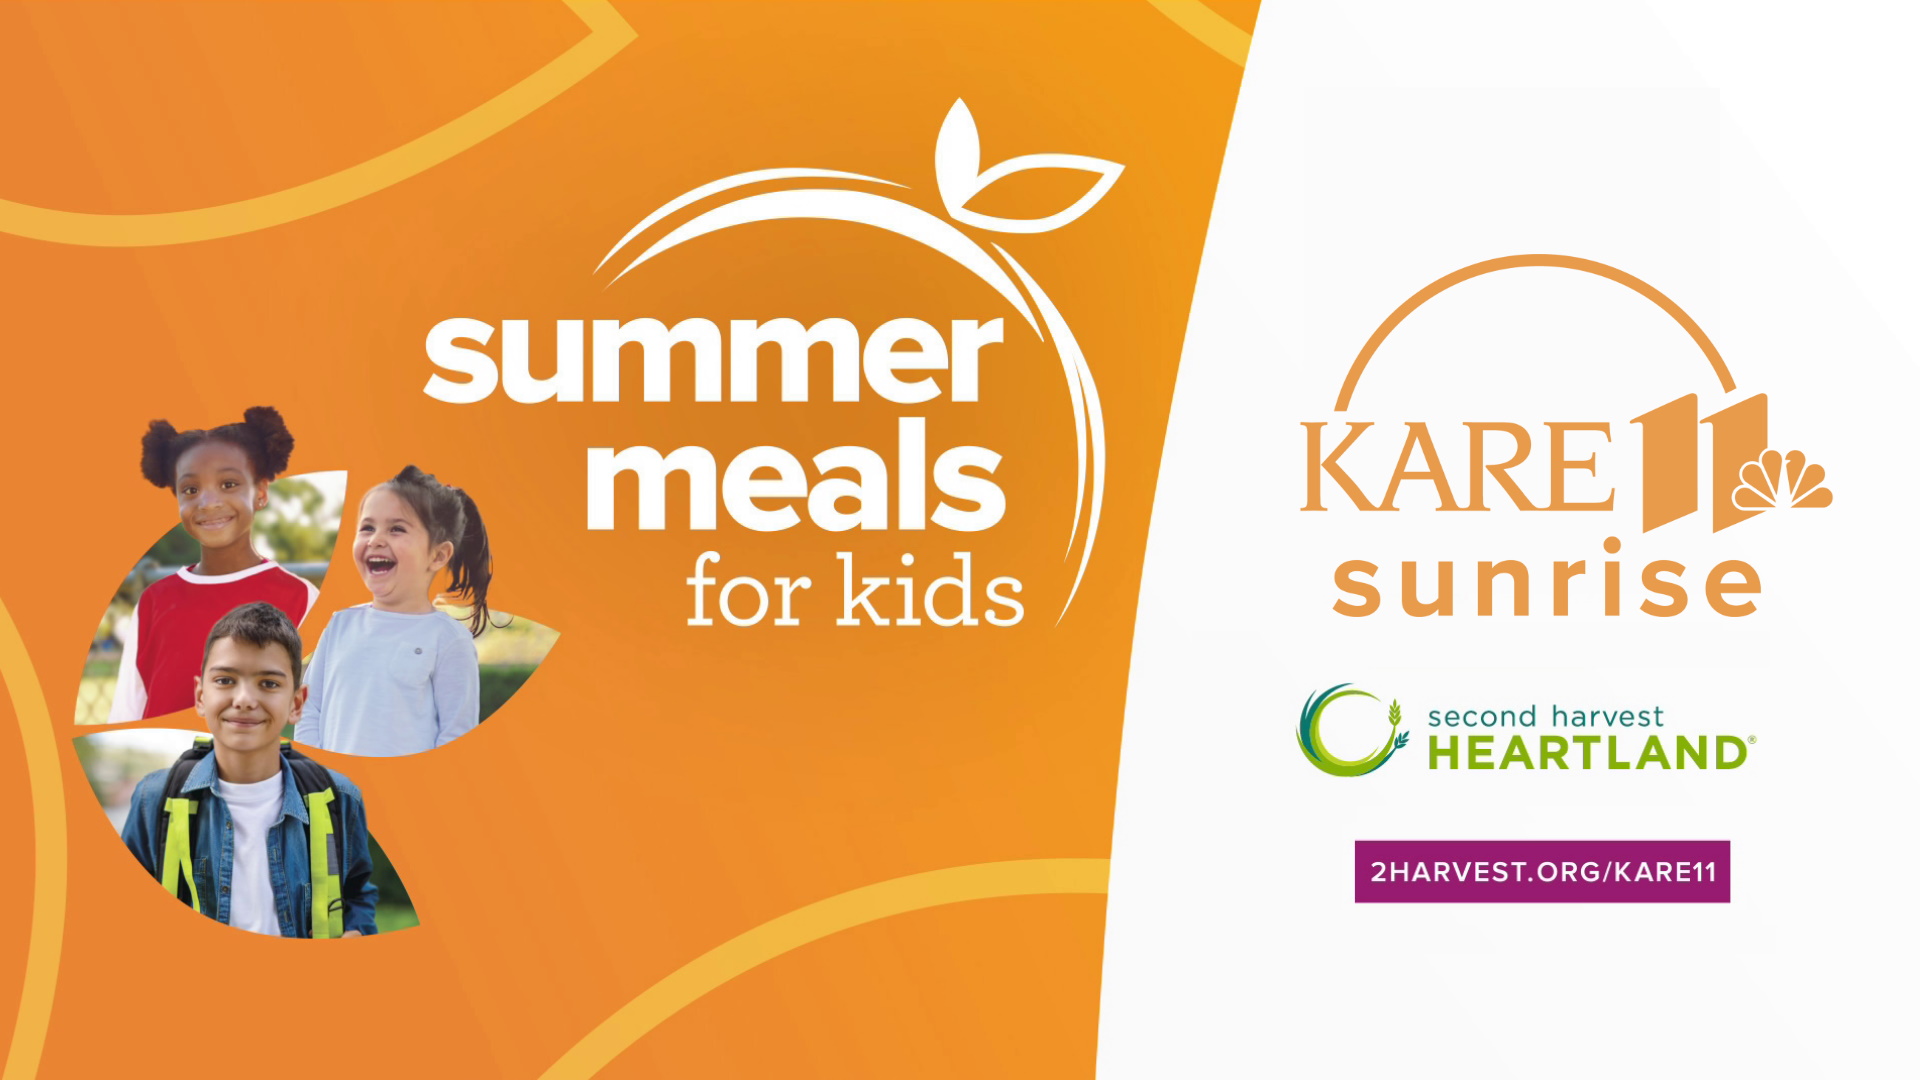 KARE 11 Sunrise & Second Harvest Heartland team up for Summer Meals for Kids